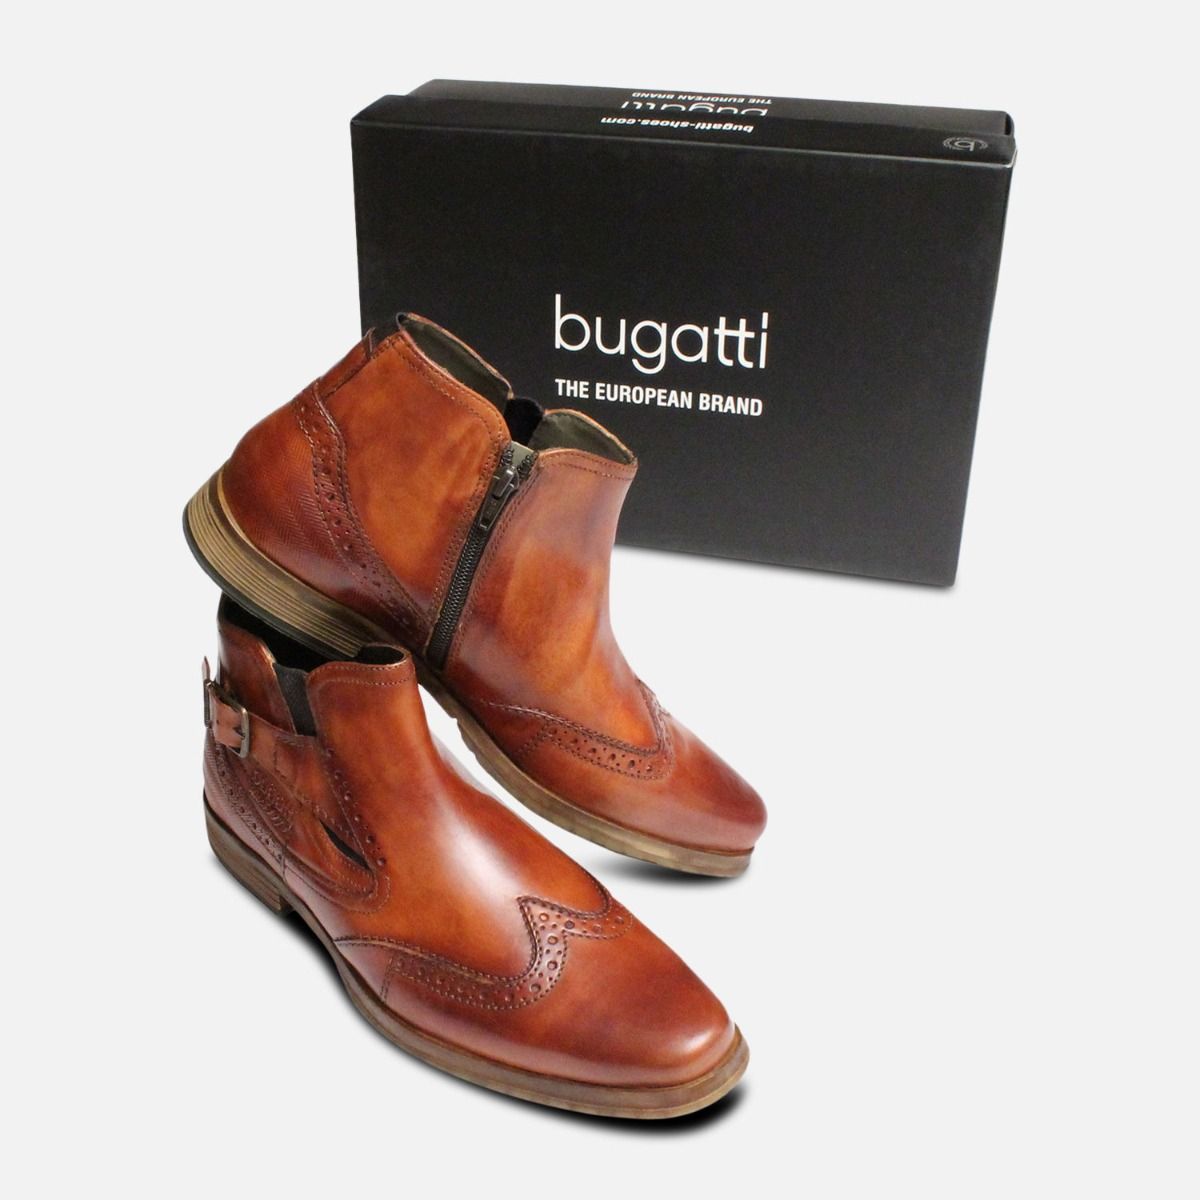 bugatti boots